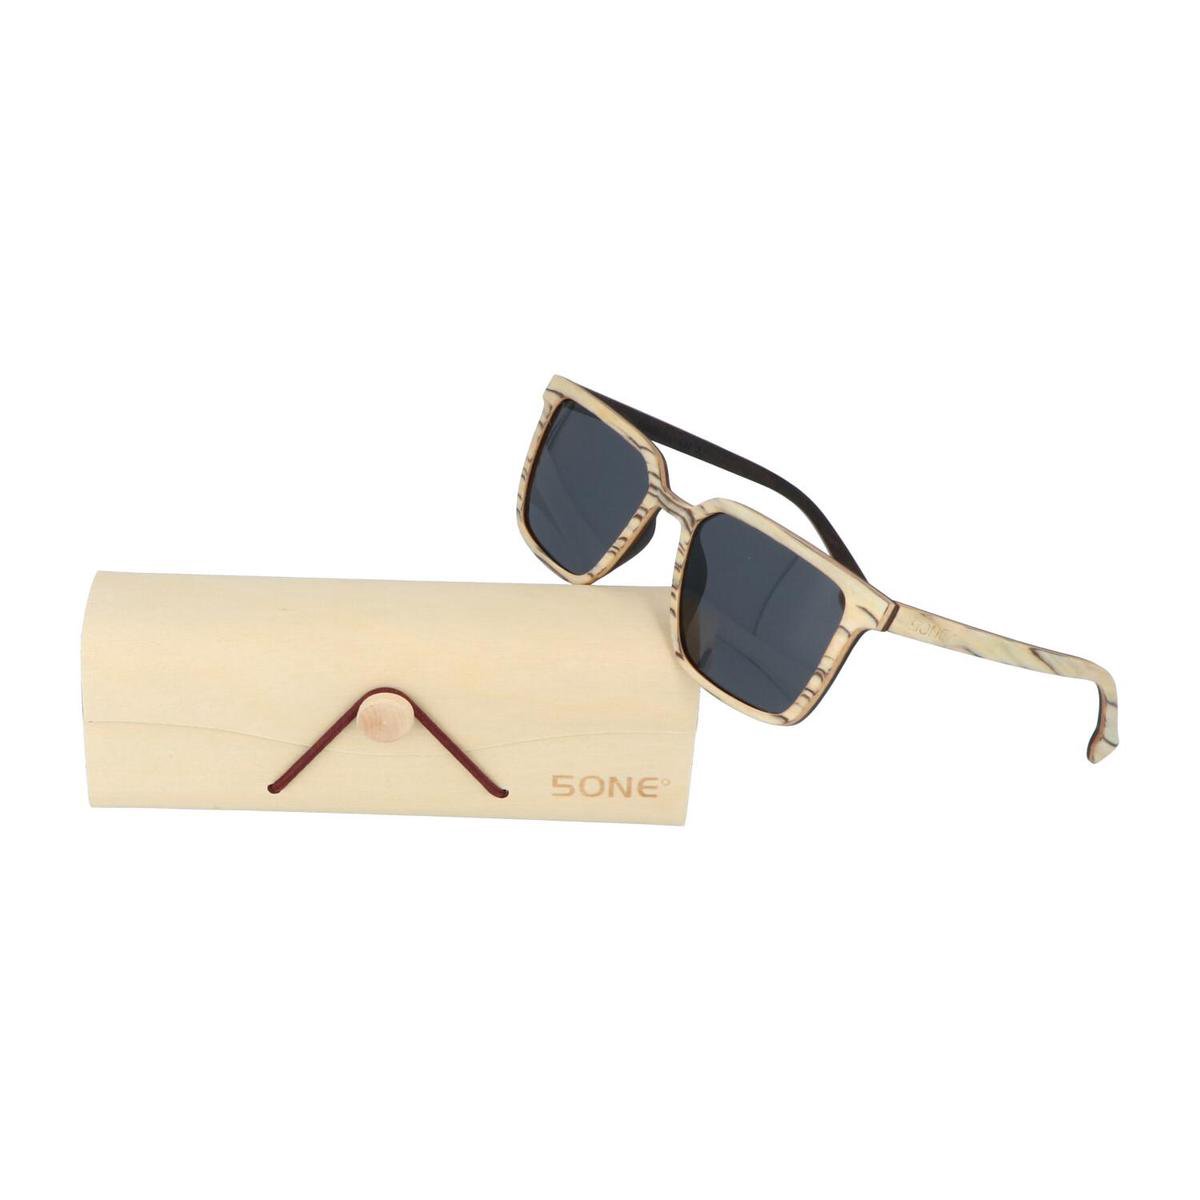 5one® Rimini Slimline White - houten zonnebril met zwarte strepen